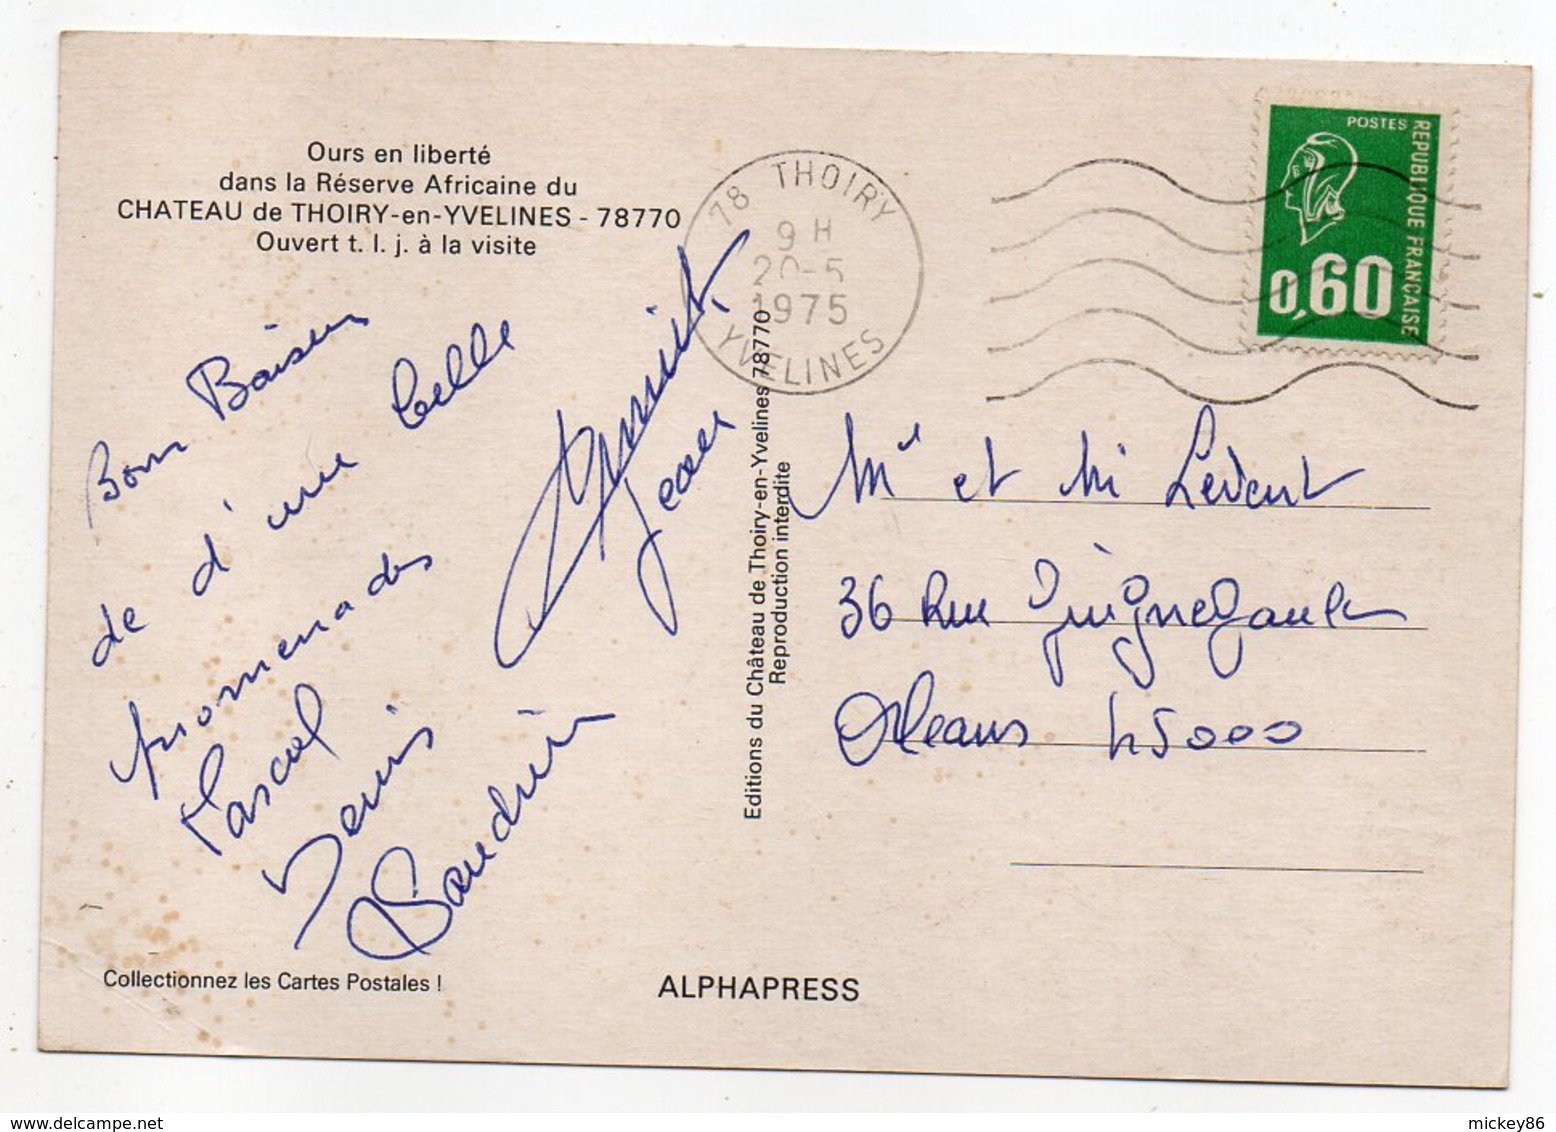 THOIRY--1975--Ours En Liberté Dans La Réserve Africaine (animée,voiture BMW 2002 TI)--timbre--cachet....à Saisir - Thoiry